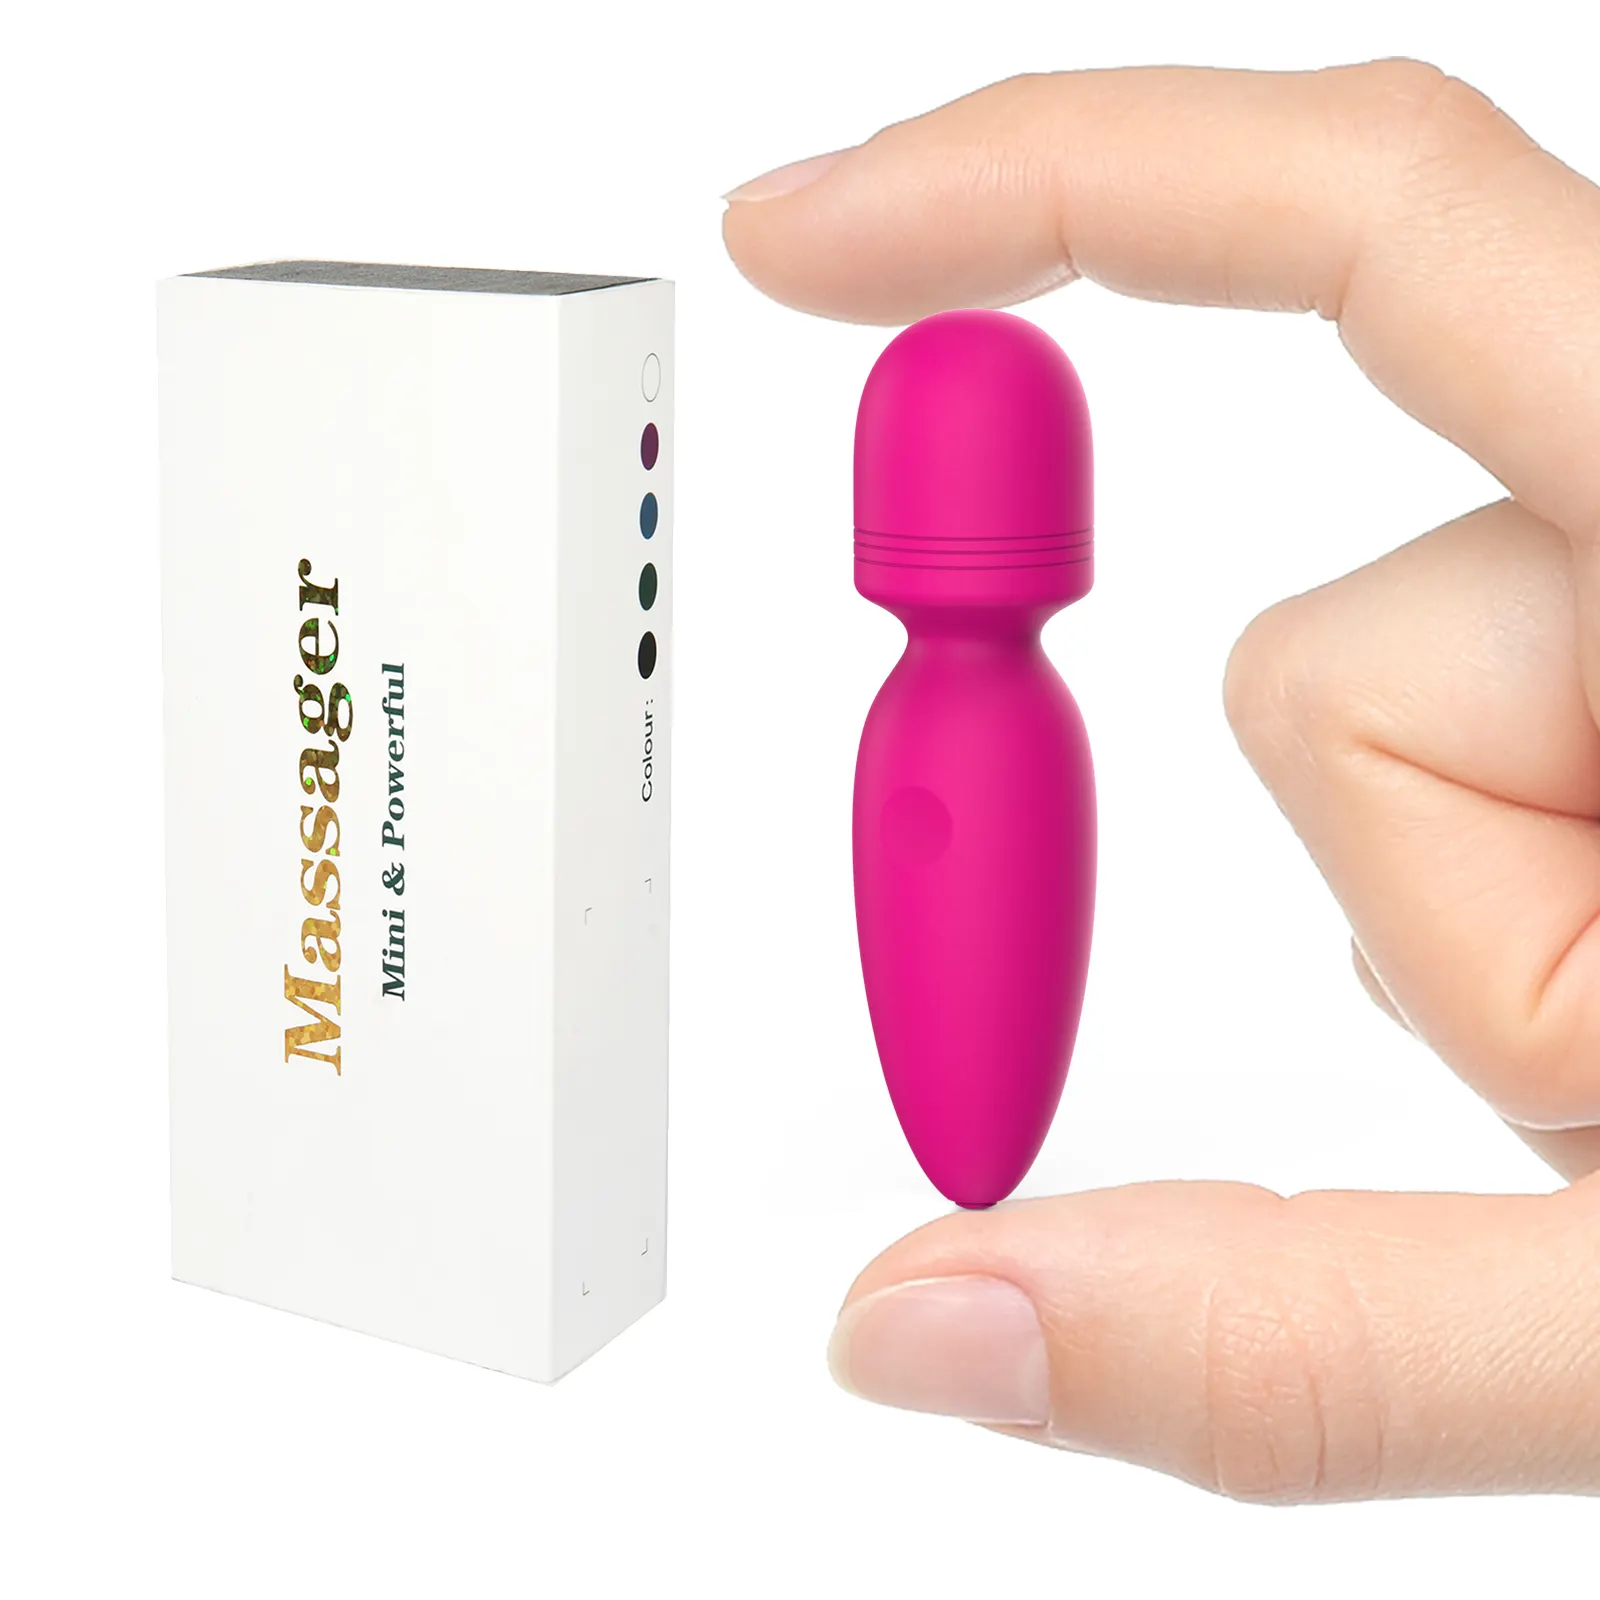 10 Vibration Portable Mini Bullet Vibrator Female Vagina Stimulation Vibrators Sex Products Women AV Wand Massager